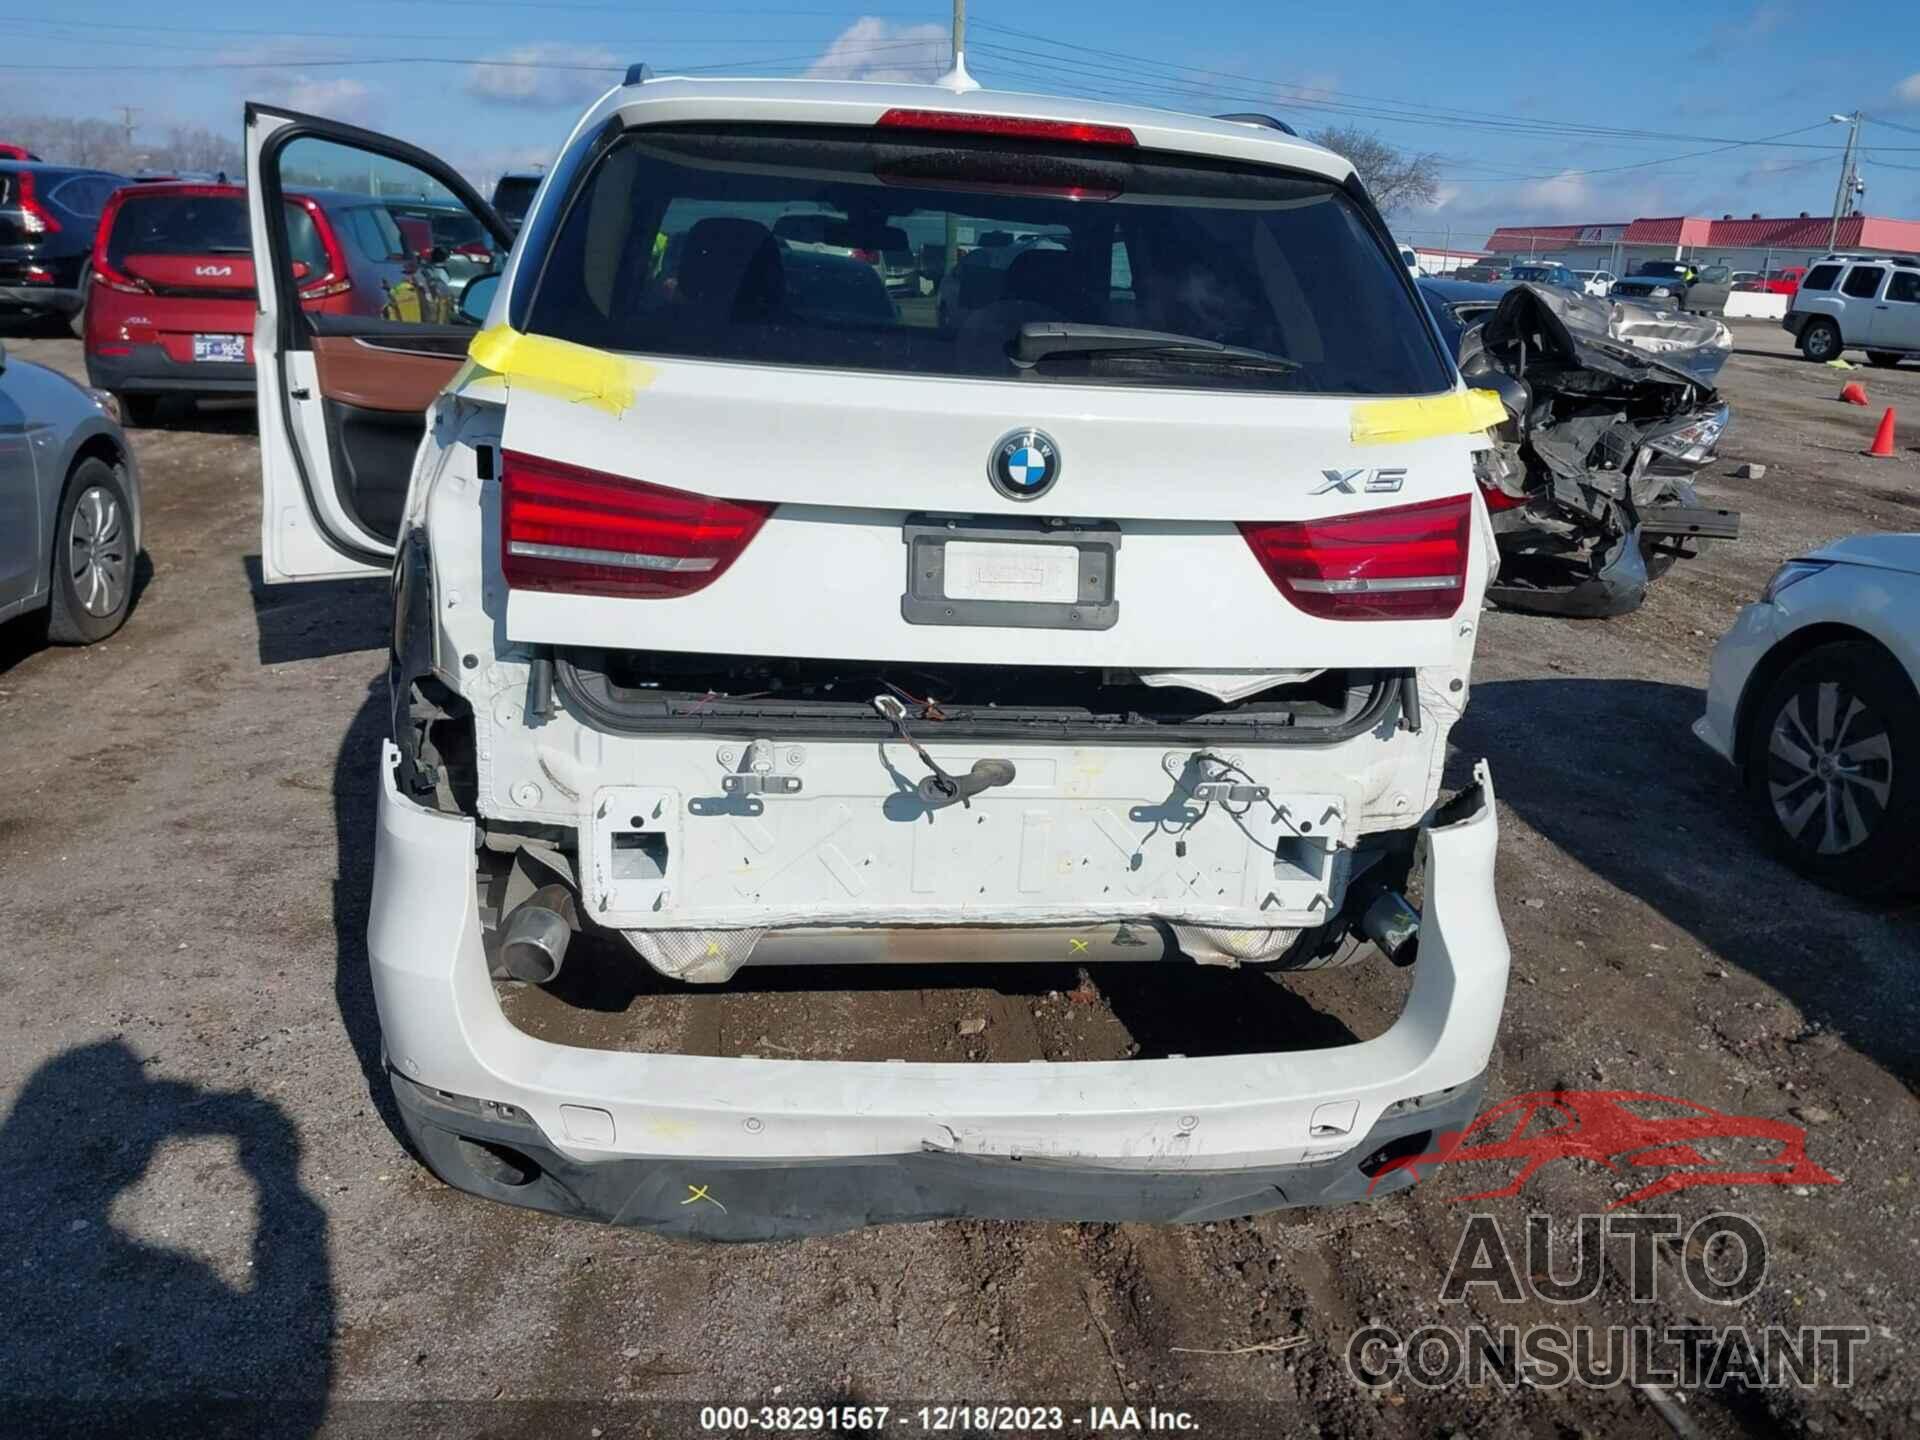 BMW X5 2016 - 5UXKR0C57G0S90333